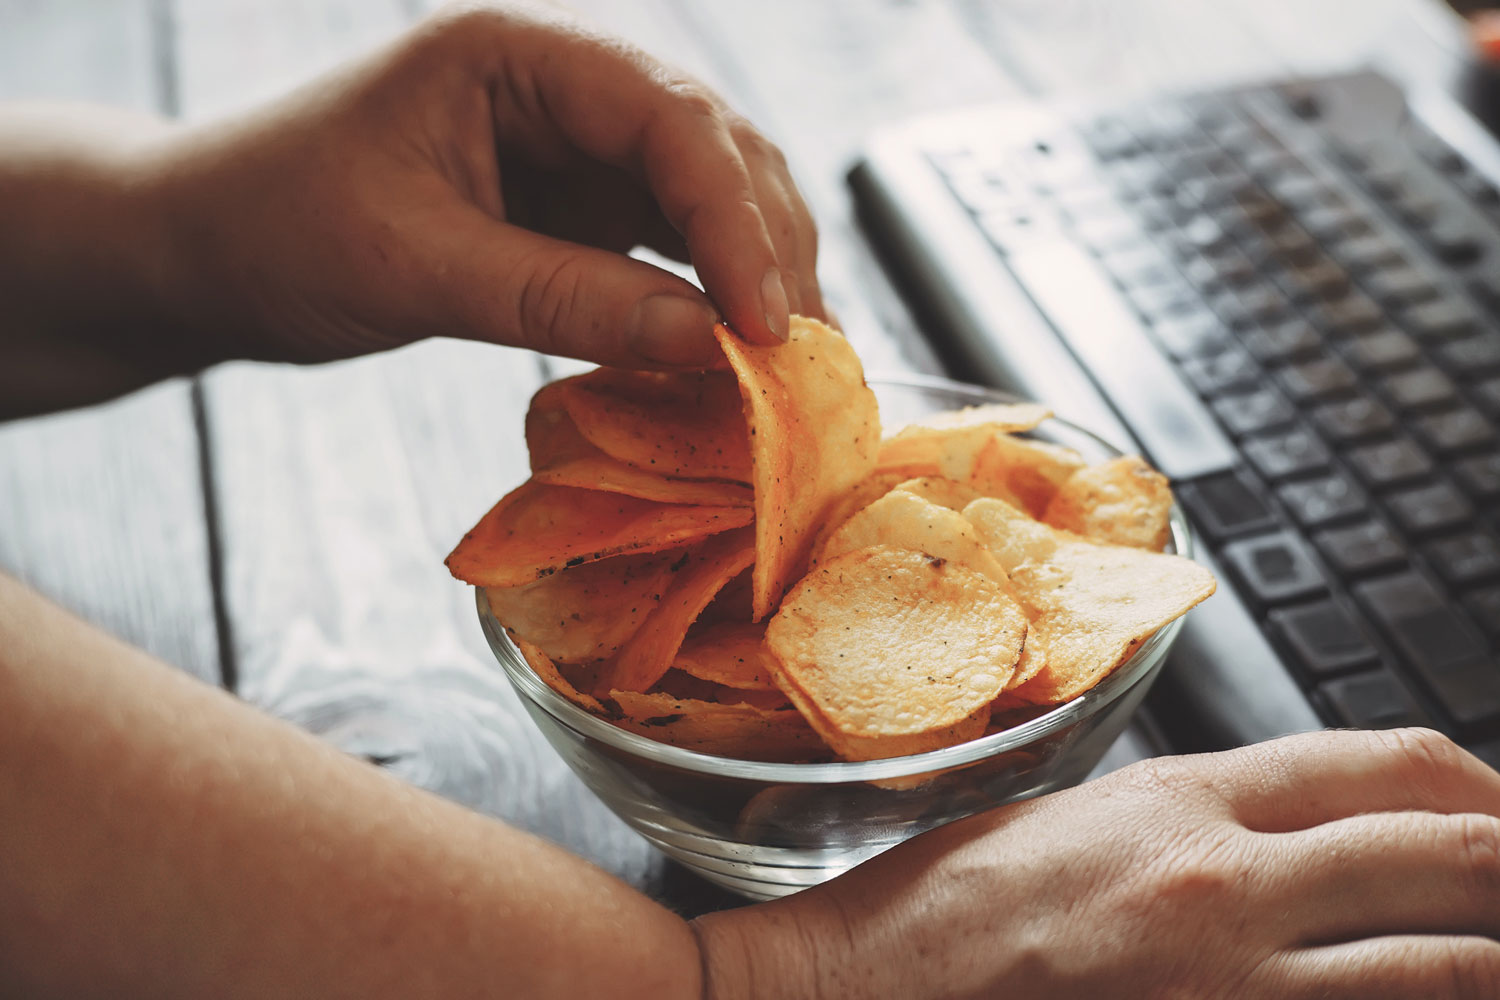 Hand nimmt Chips aus einer Schale